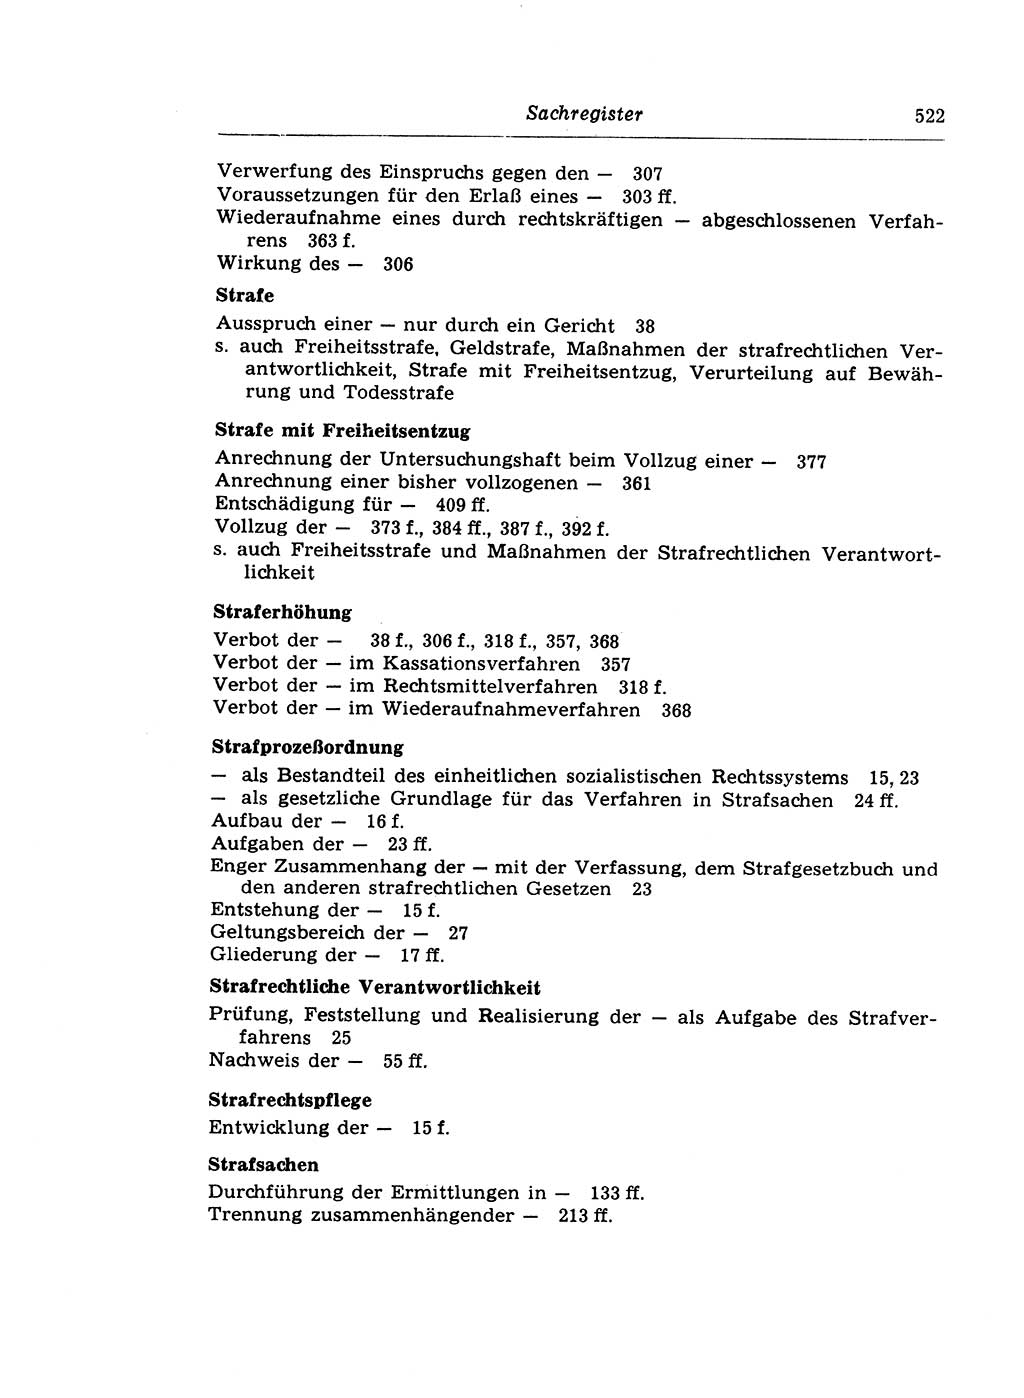 Strafprozeßrecht der DDR (Deutsche Demokratische Republik), Lehrkommentar zur Strafprozeßordnung (StPO) 1968, Seite 522 (Strafprozeßr. DDR Lehrkomm. StPO 19688, S. 522)